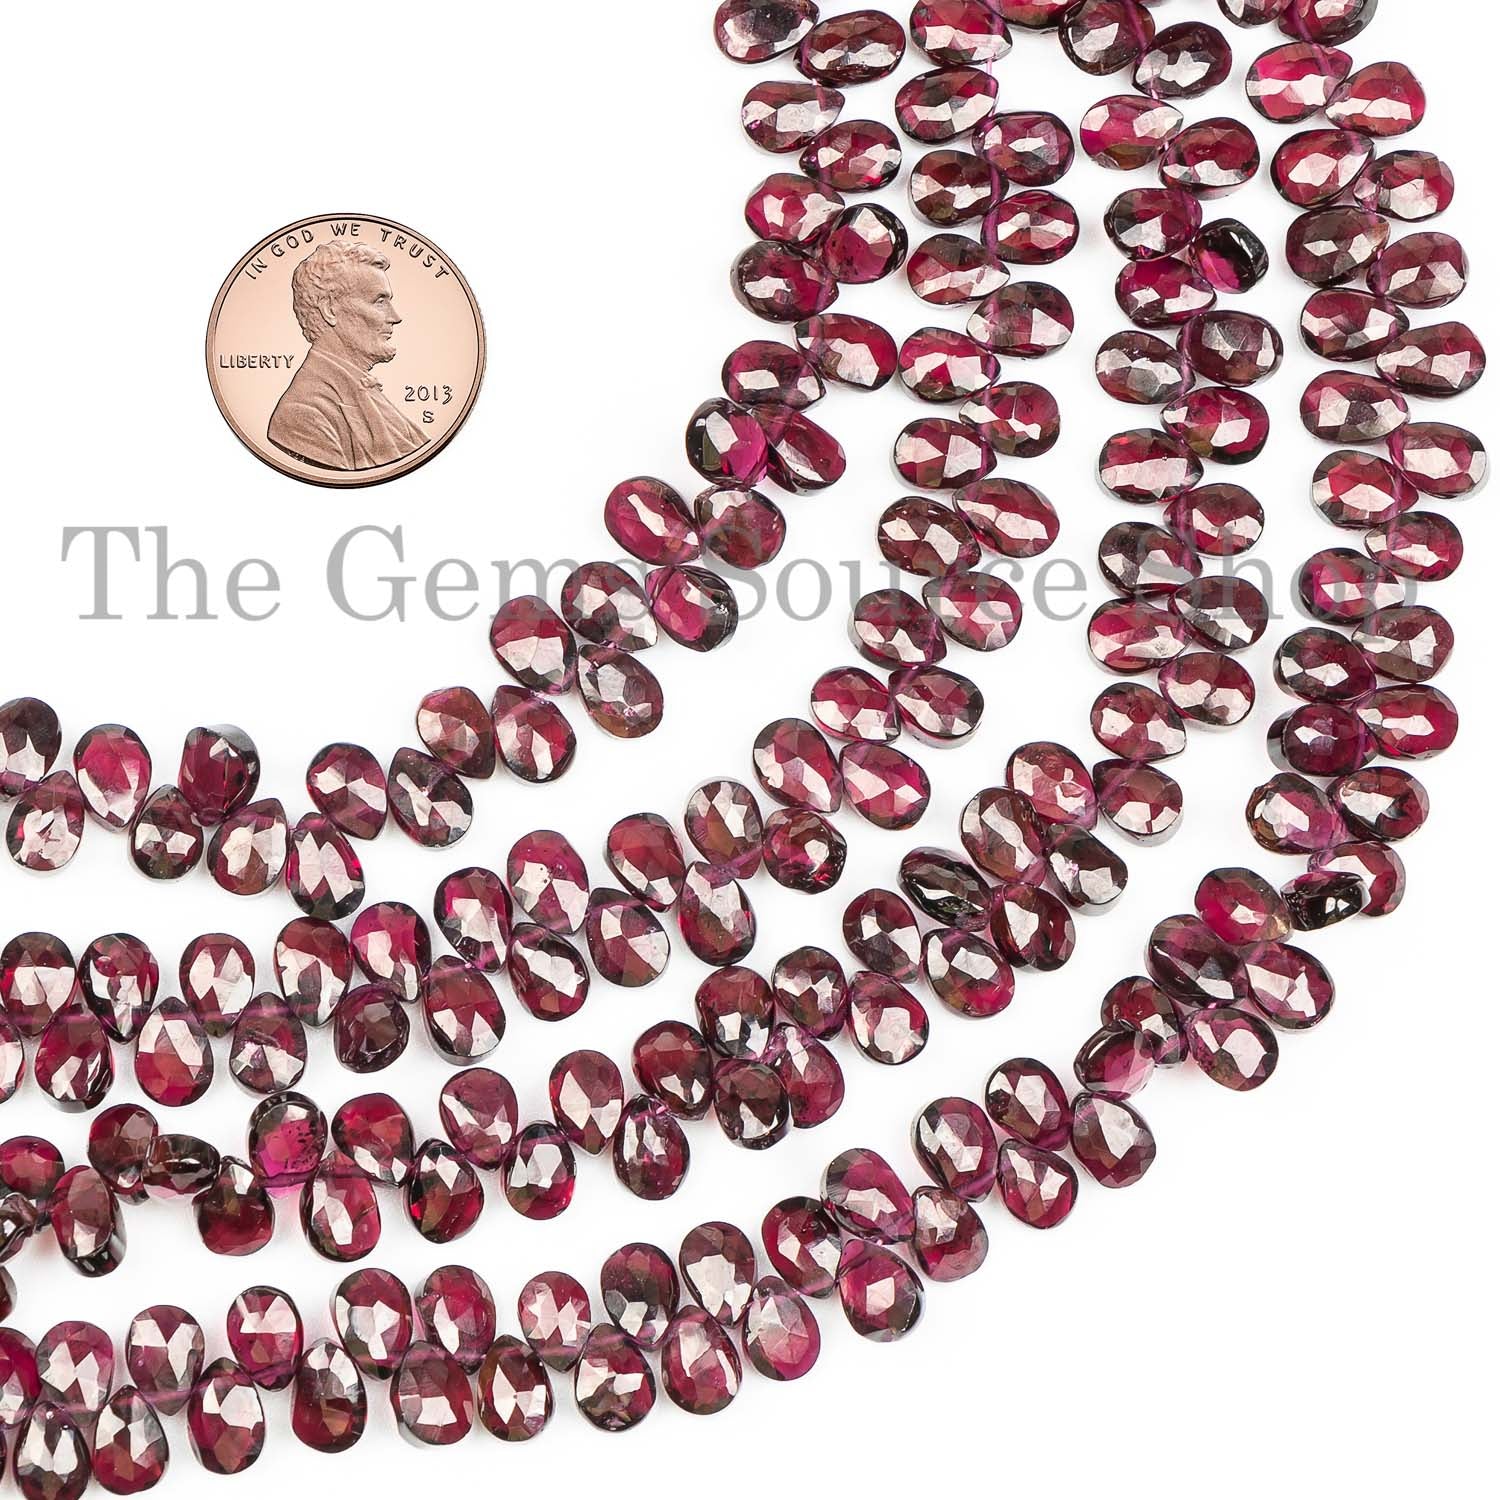 Rhodolite Garnet Pear Briolette Gemstone Beads